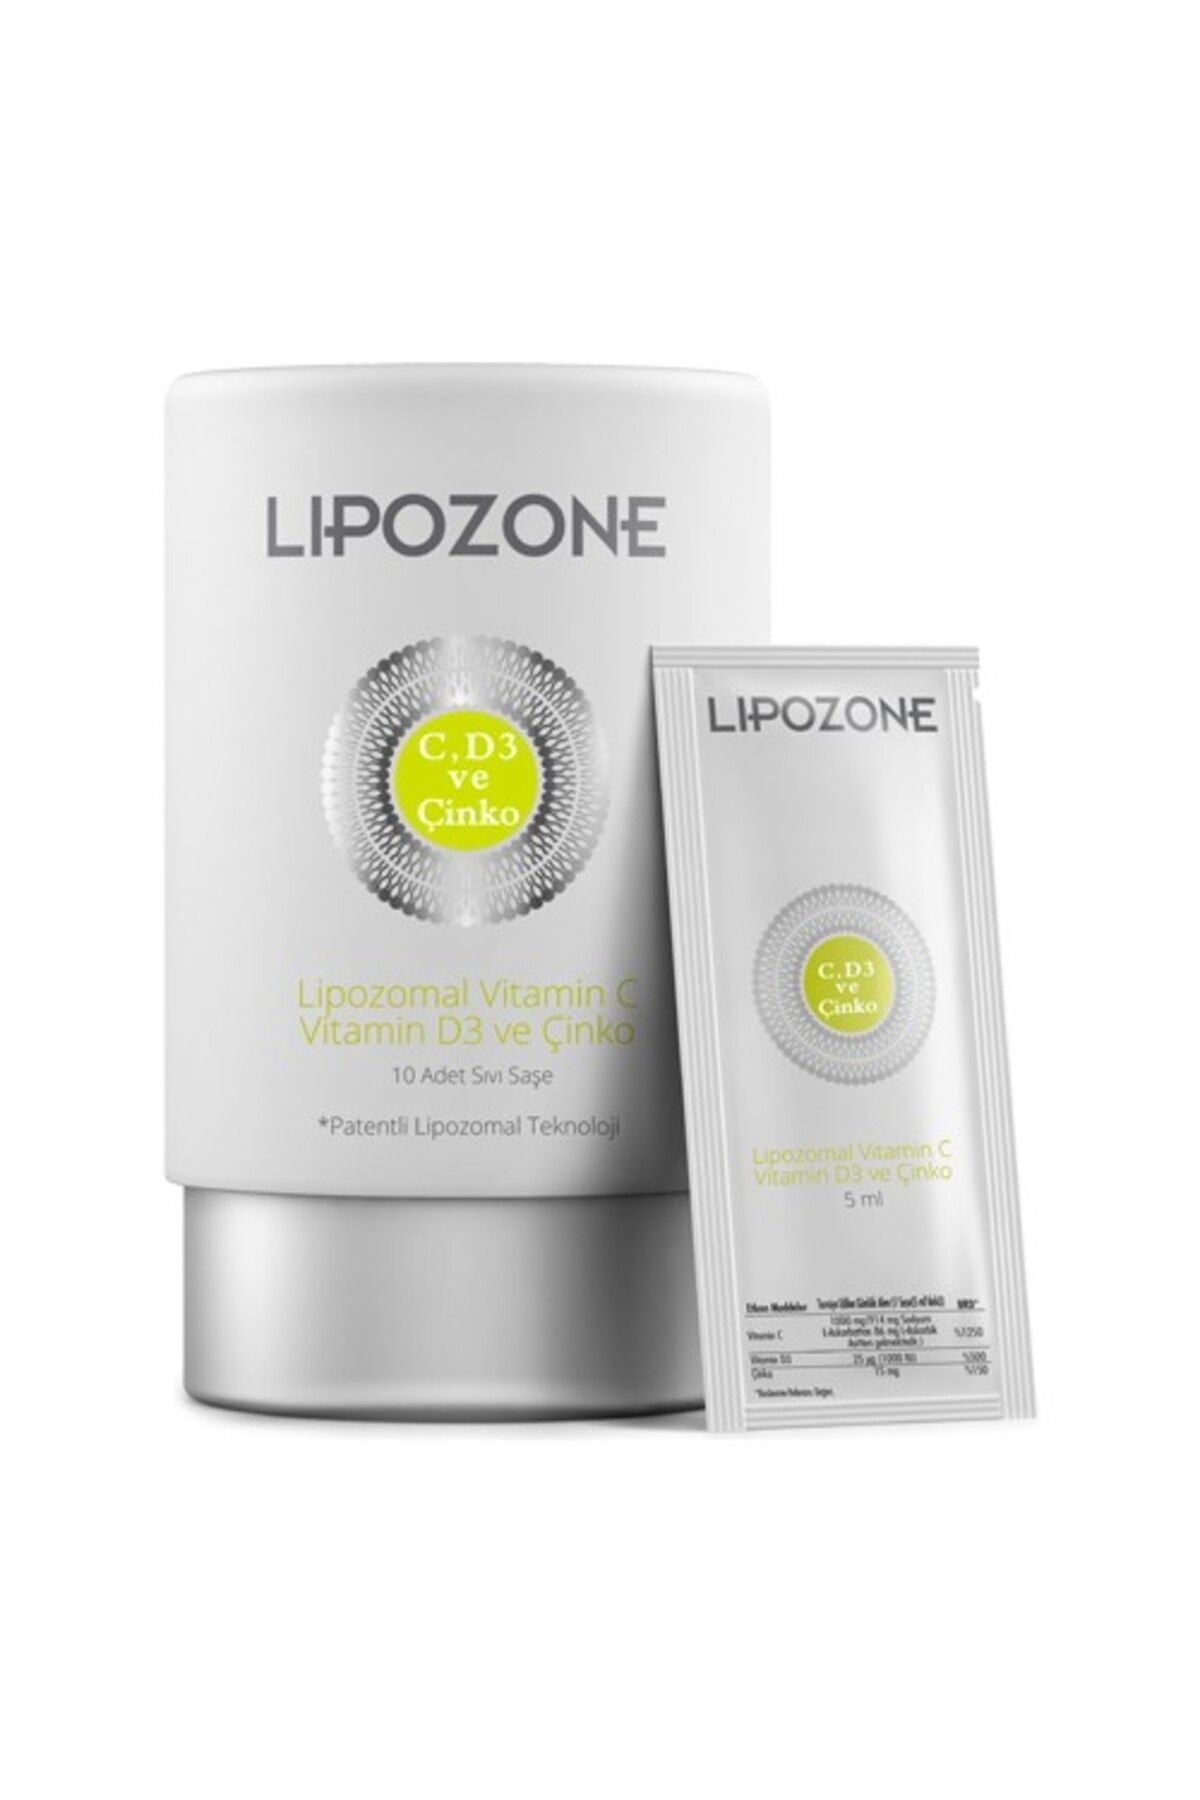 Lipozone Lipozomal Vitamin C Vitamin D3 Ve Çinko 5 ml X 10 Saşe